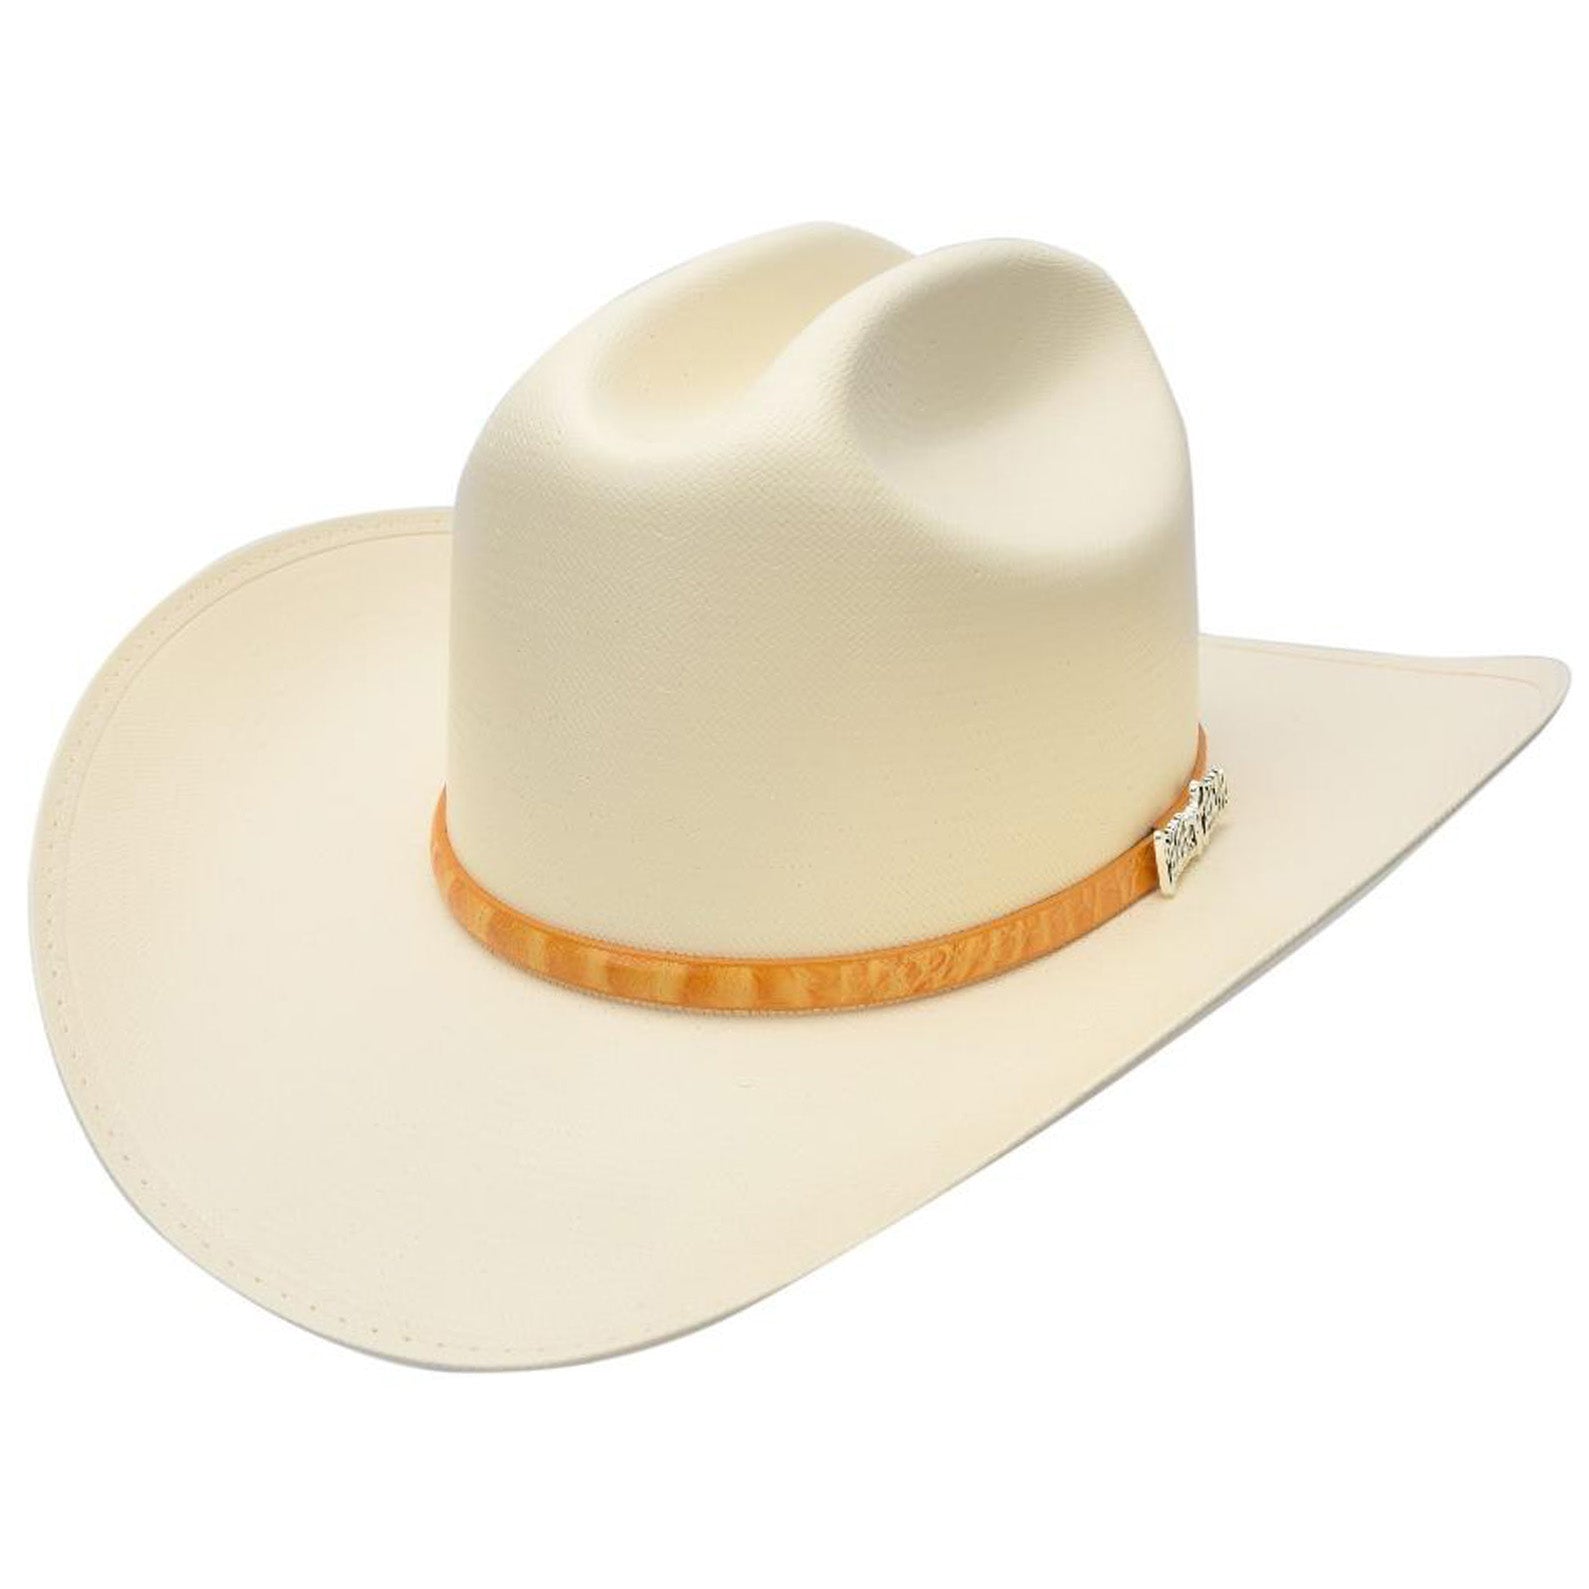 Chaparral 150x Cowboy Hat